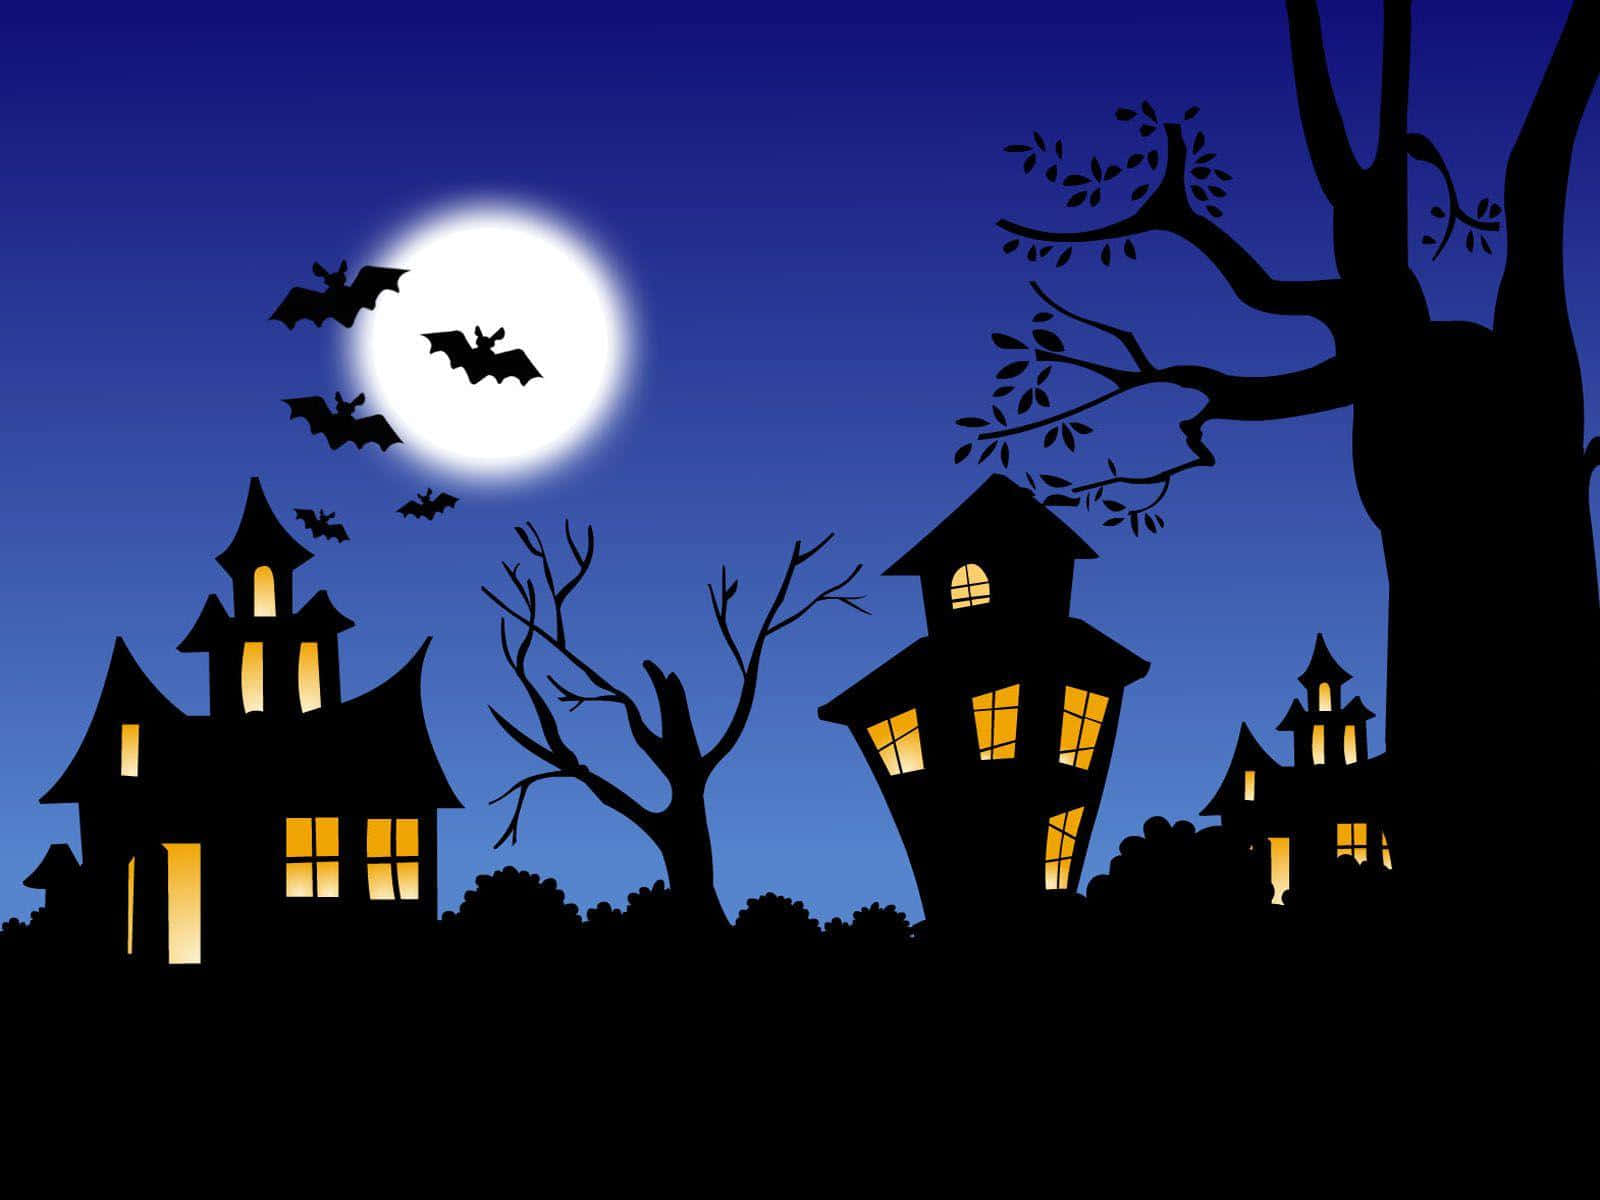 Imagende Casas Embrujadas De Dibujos Animados De Halloween Bajo La Luna Llena.